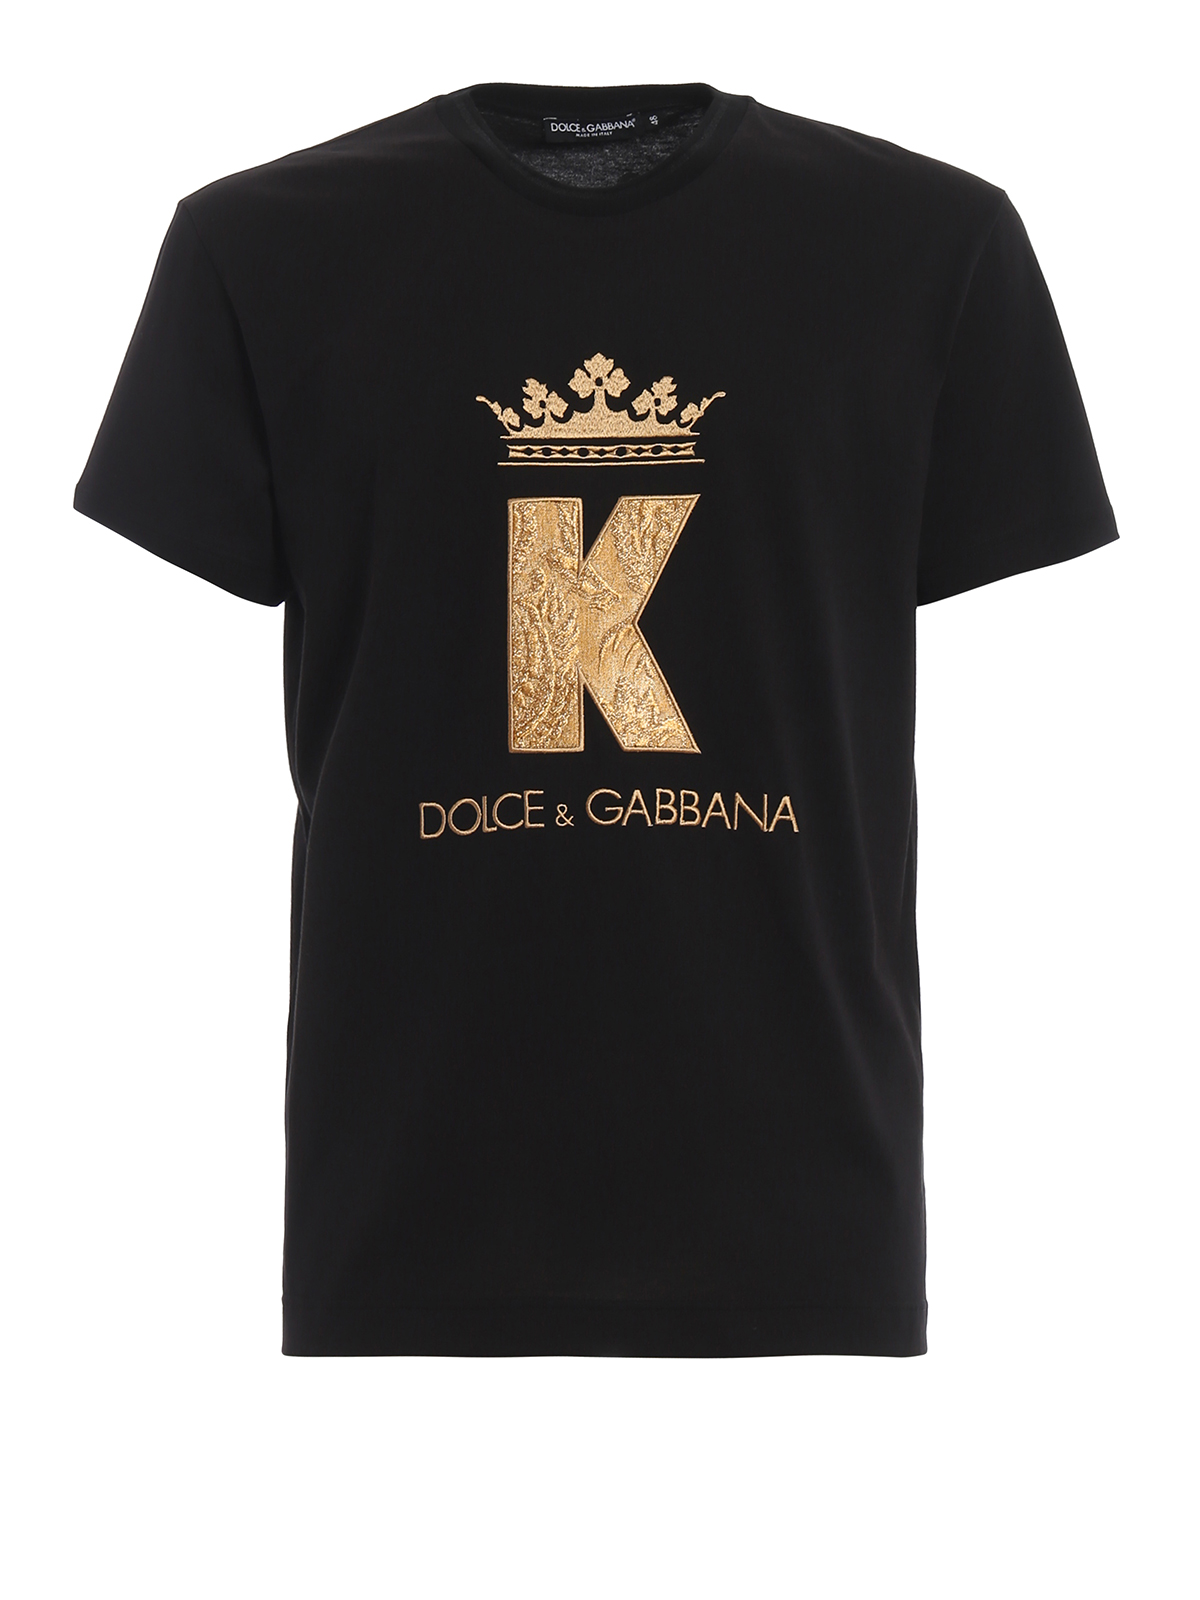 dolce and gabbana king t shirt